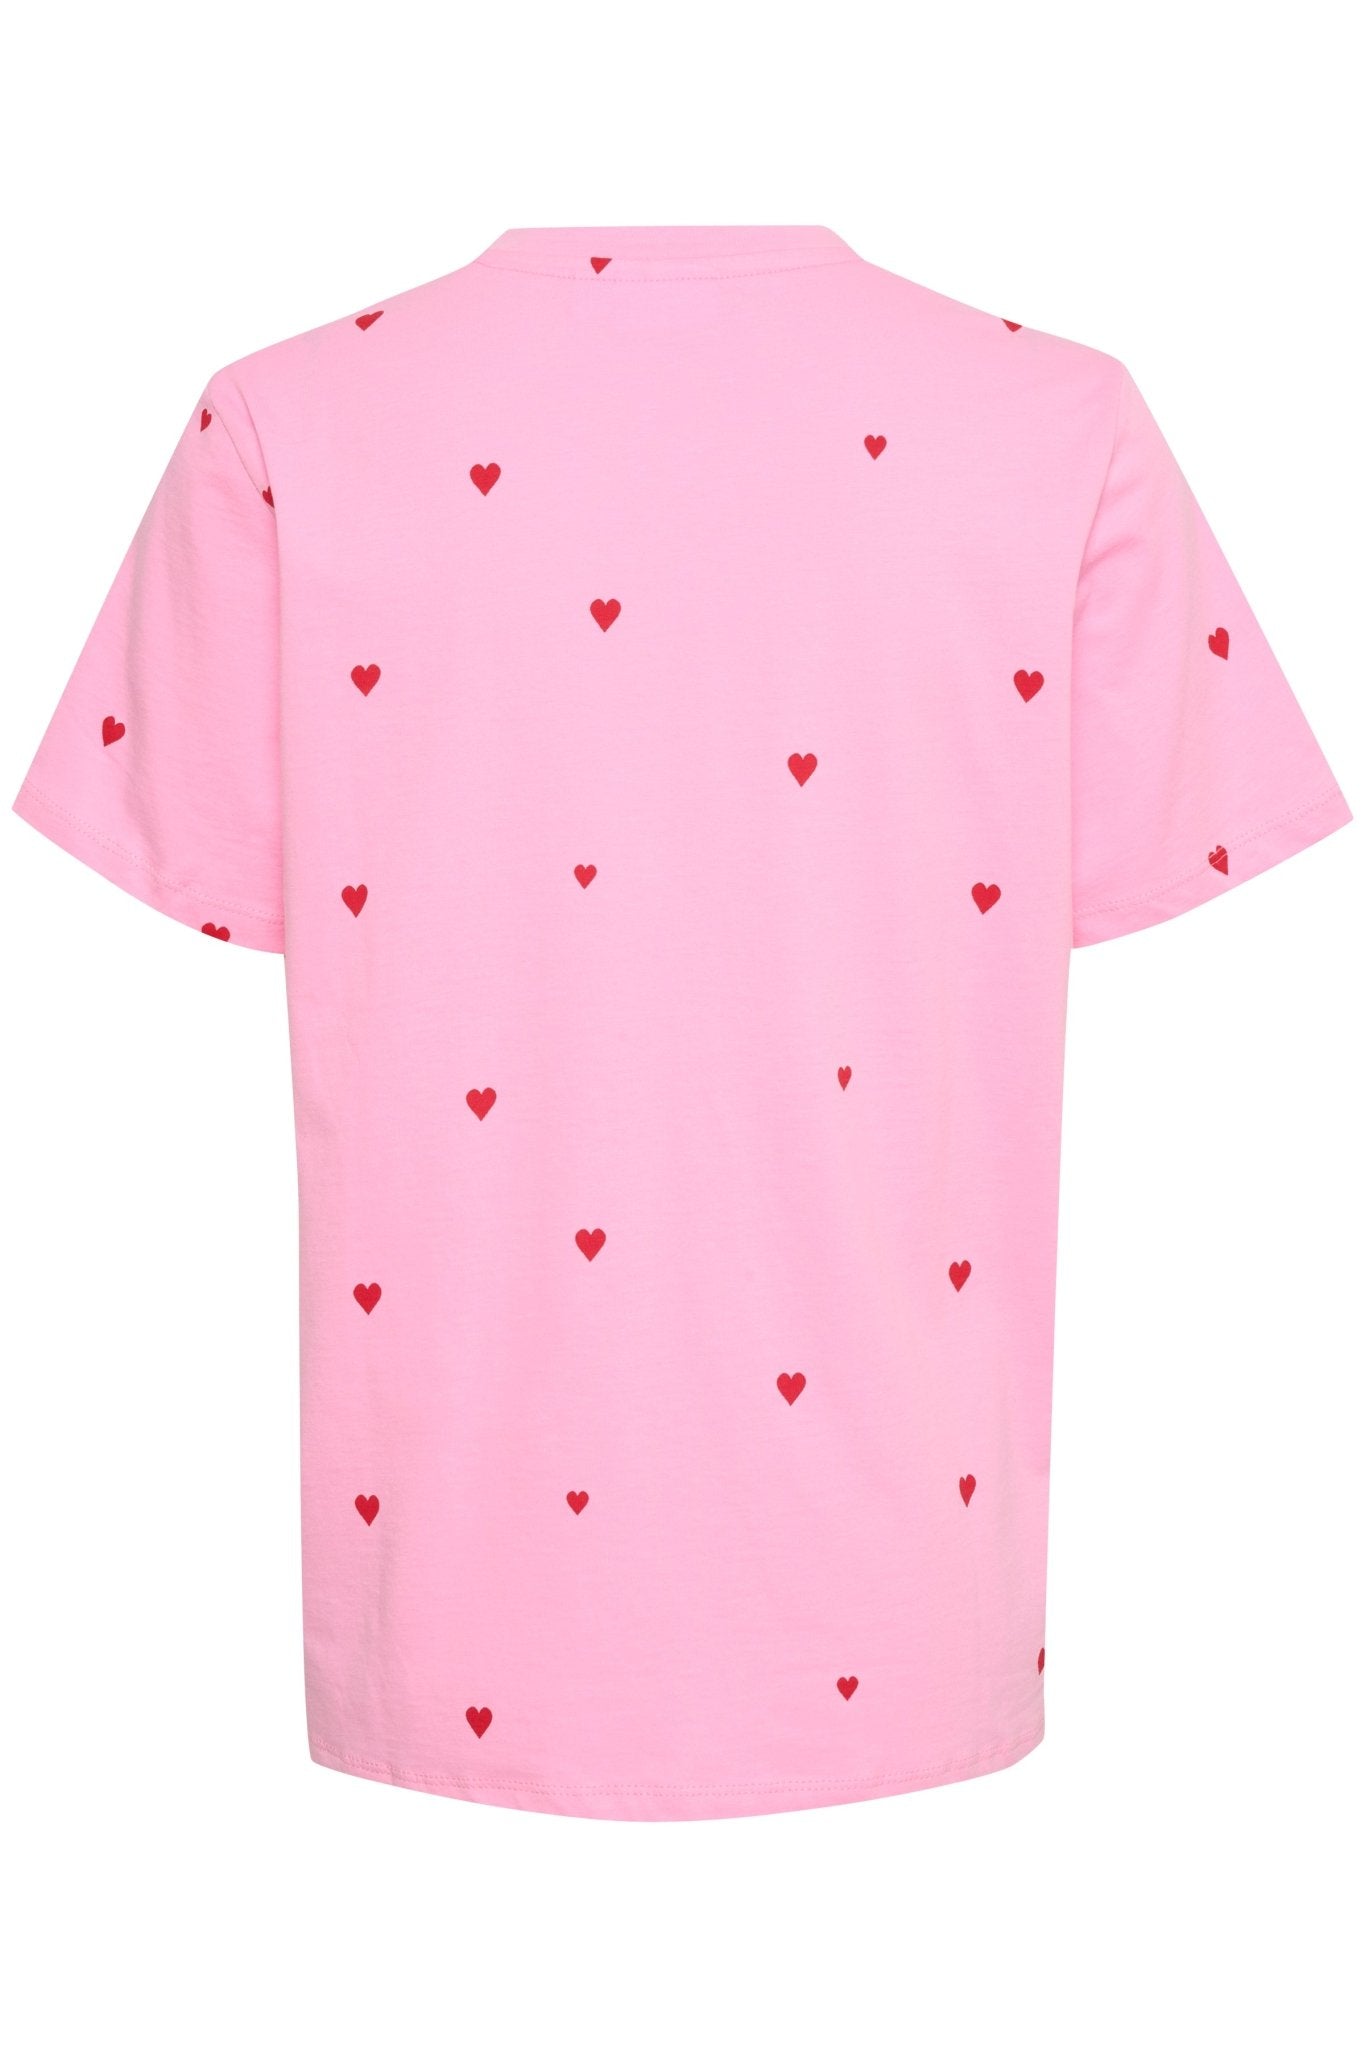 Dagni T-shirt by Saint Tropez - bonbon hearts - Blue Sky Fashions & Lingerie